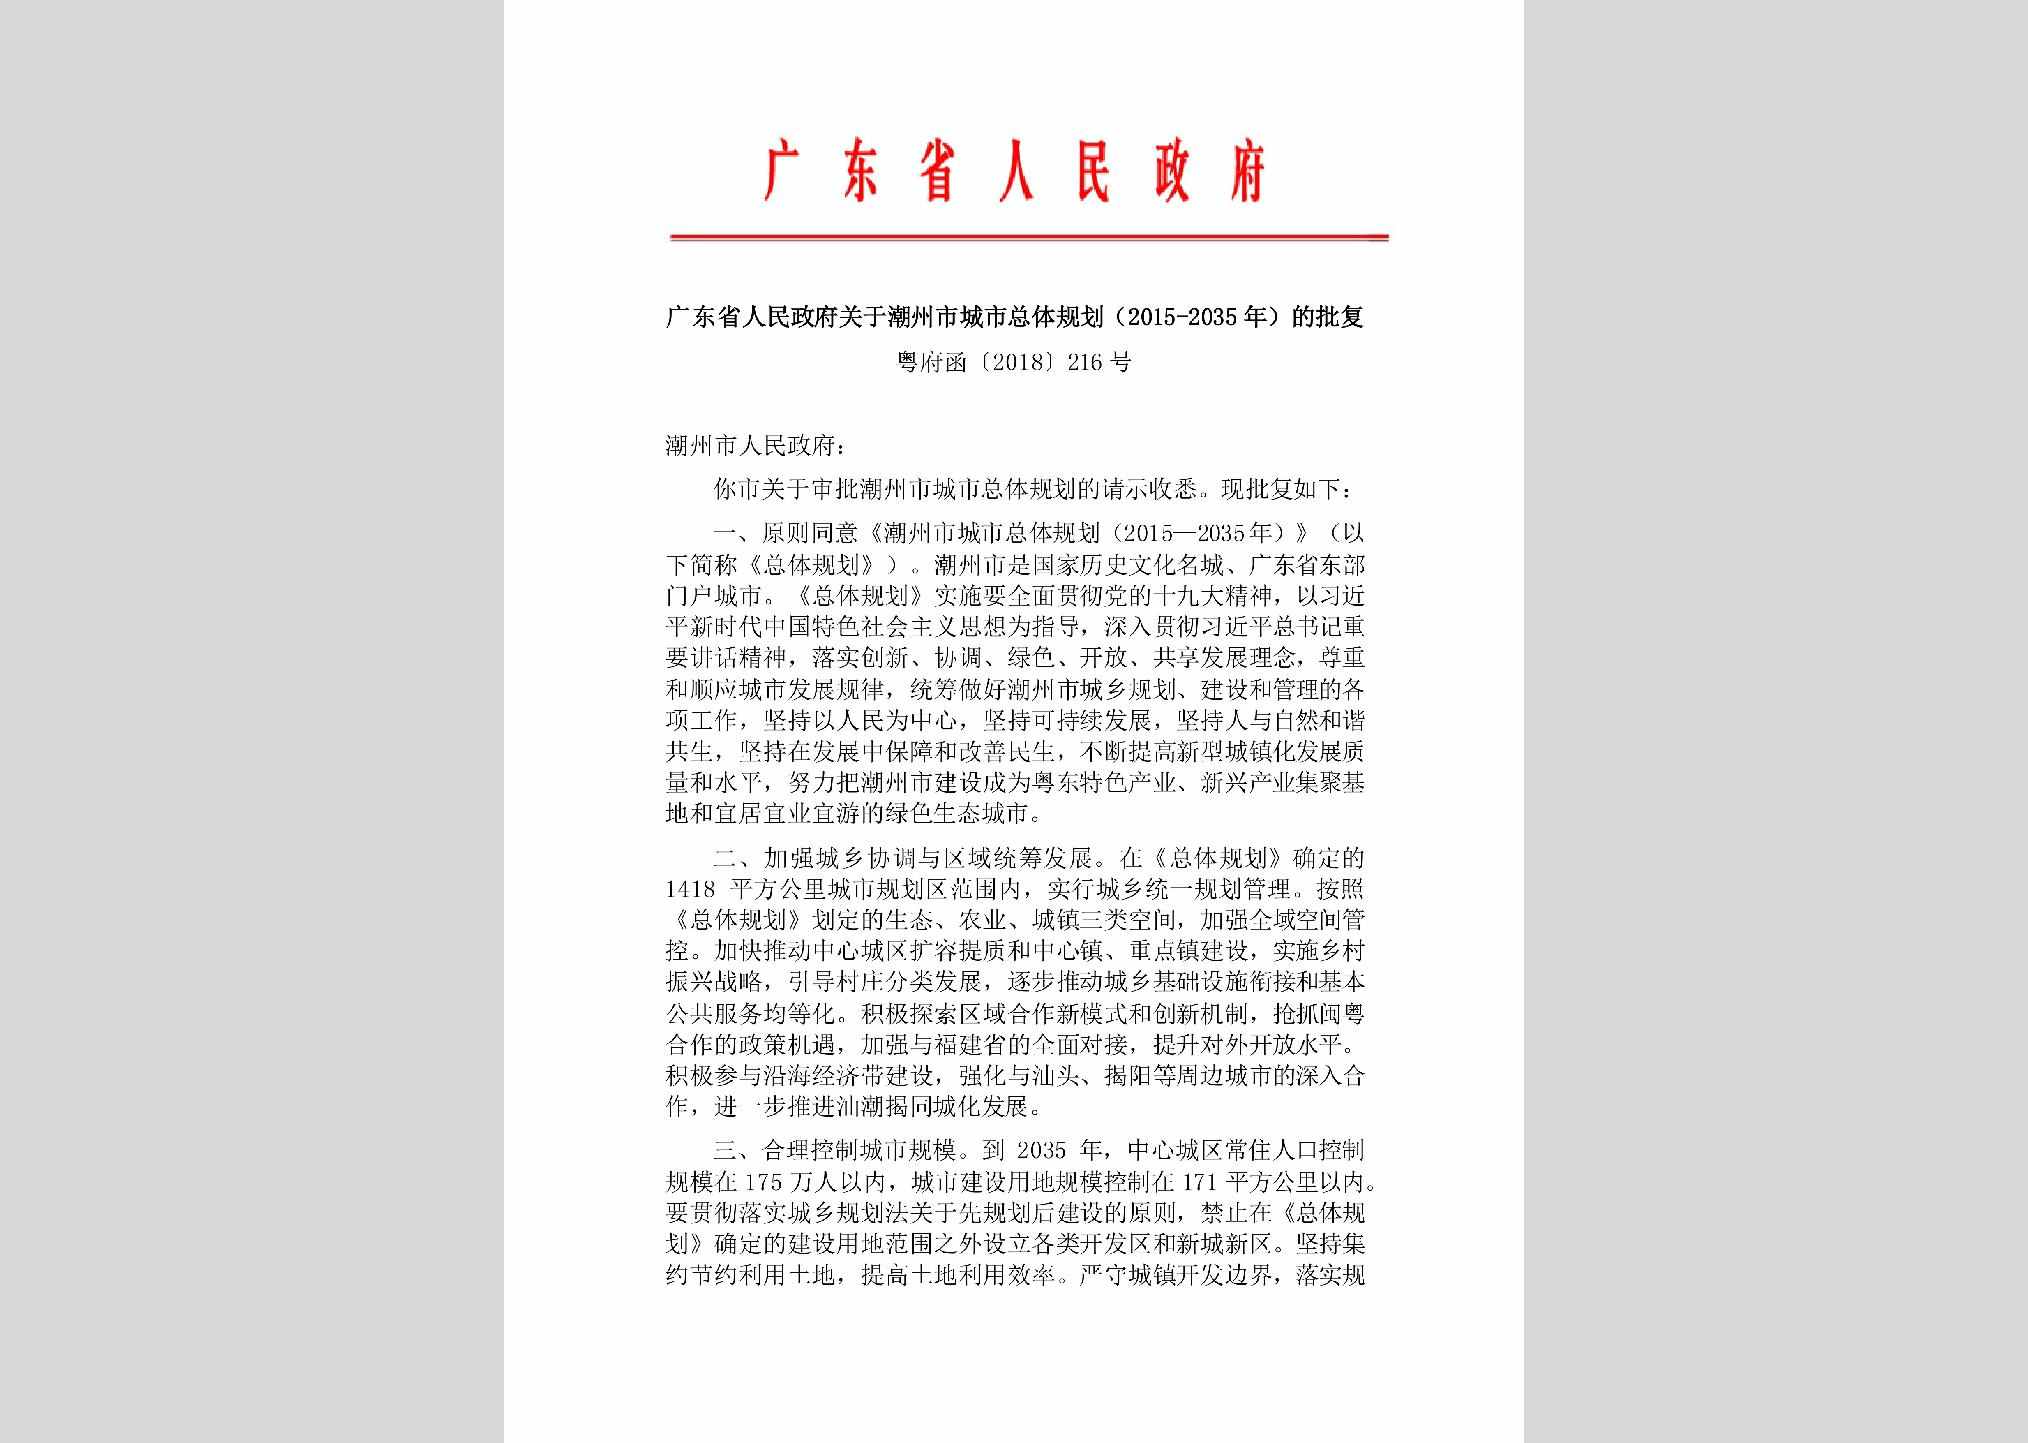 粤府函[2018]216号：广东省人民政府关于潮州市城市总体规划(2015-2035年)的批复